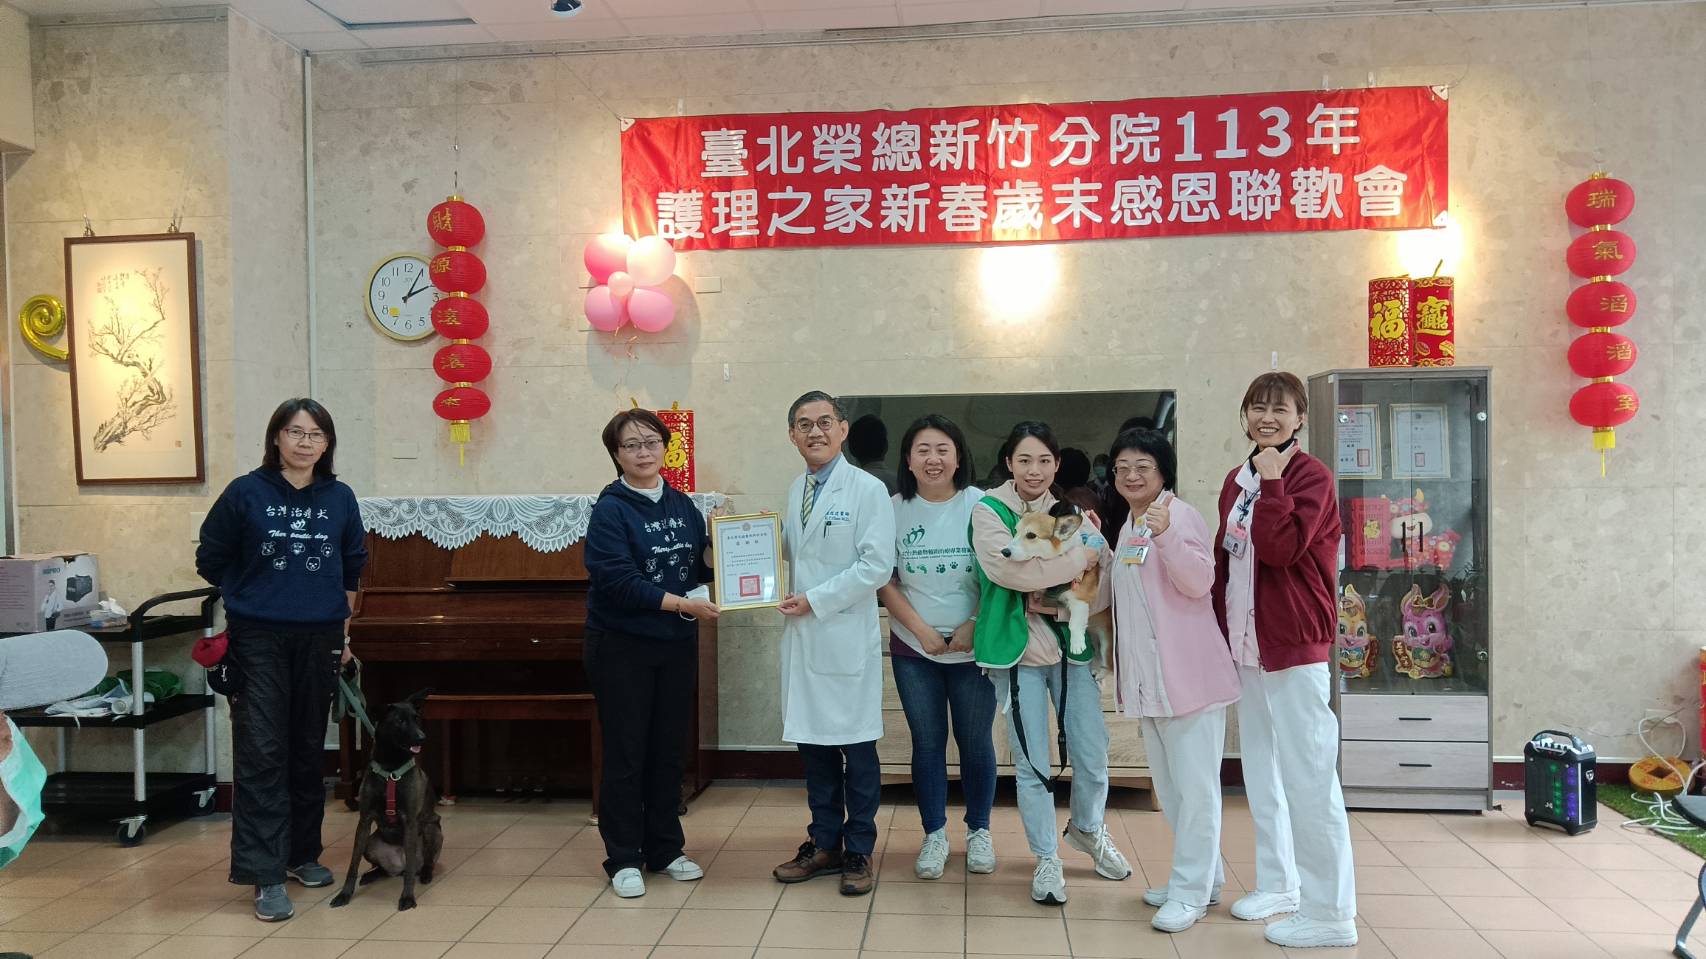 寵物輔療體驗治療犬暖心互動     為北榮新竹分院護理之家爺爺奶奶營造「家的感覺」照護環境